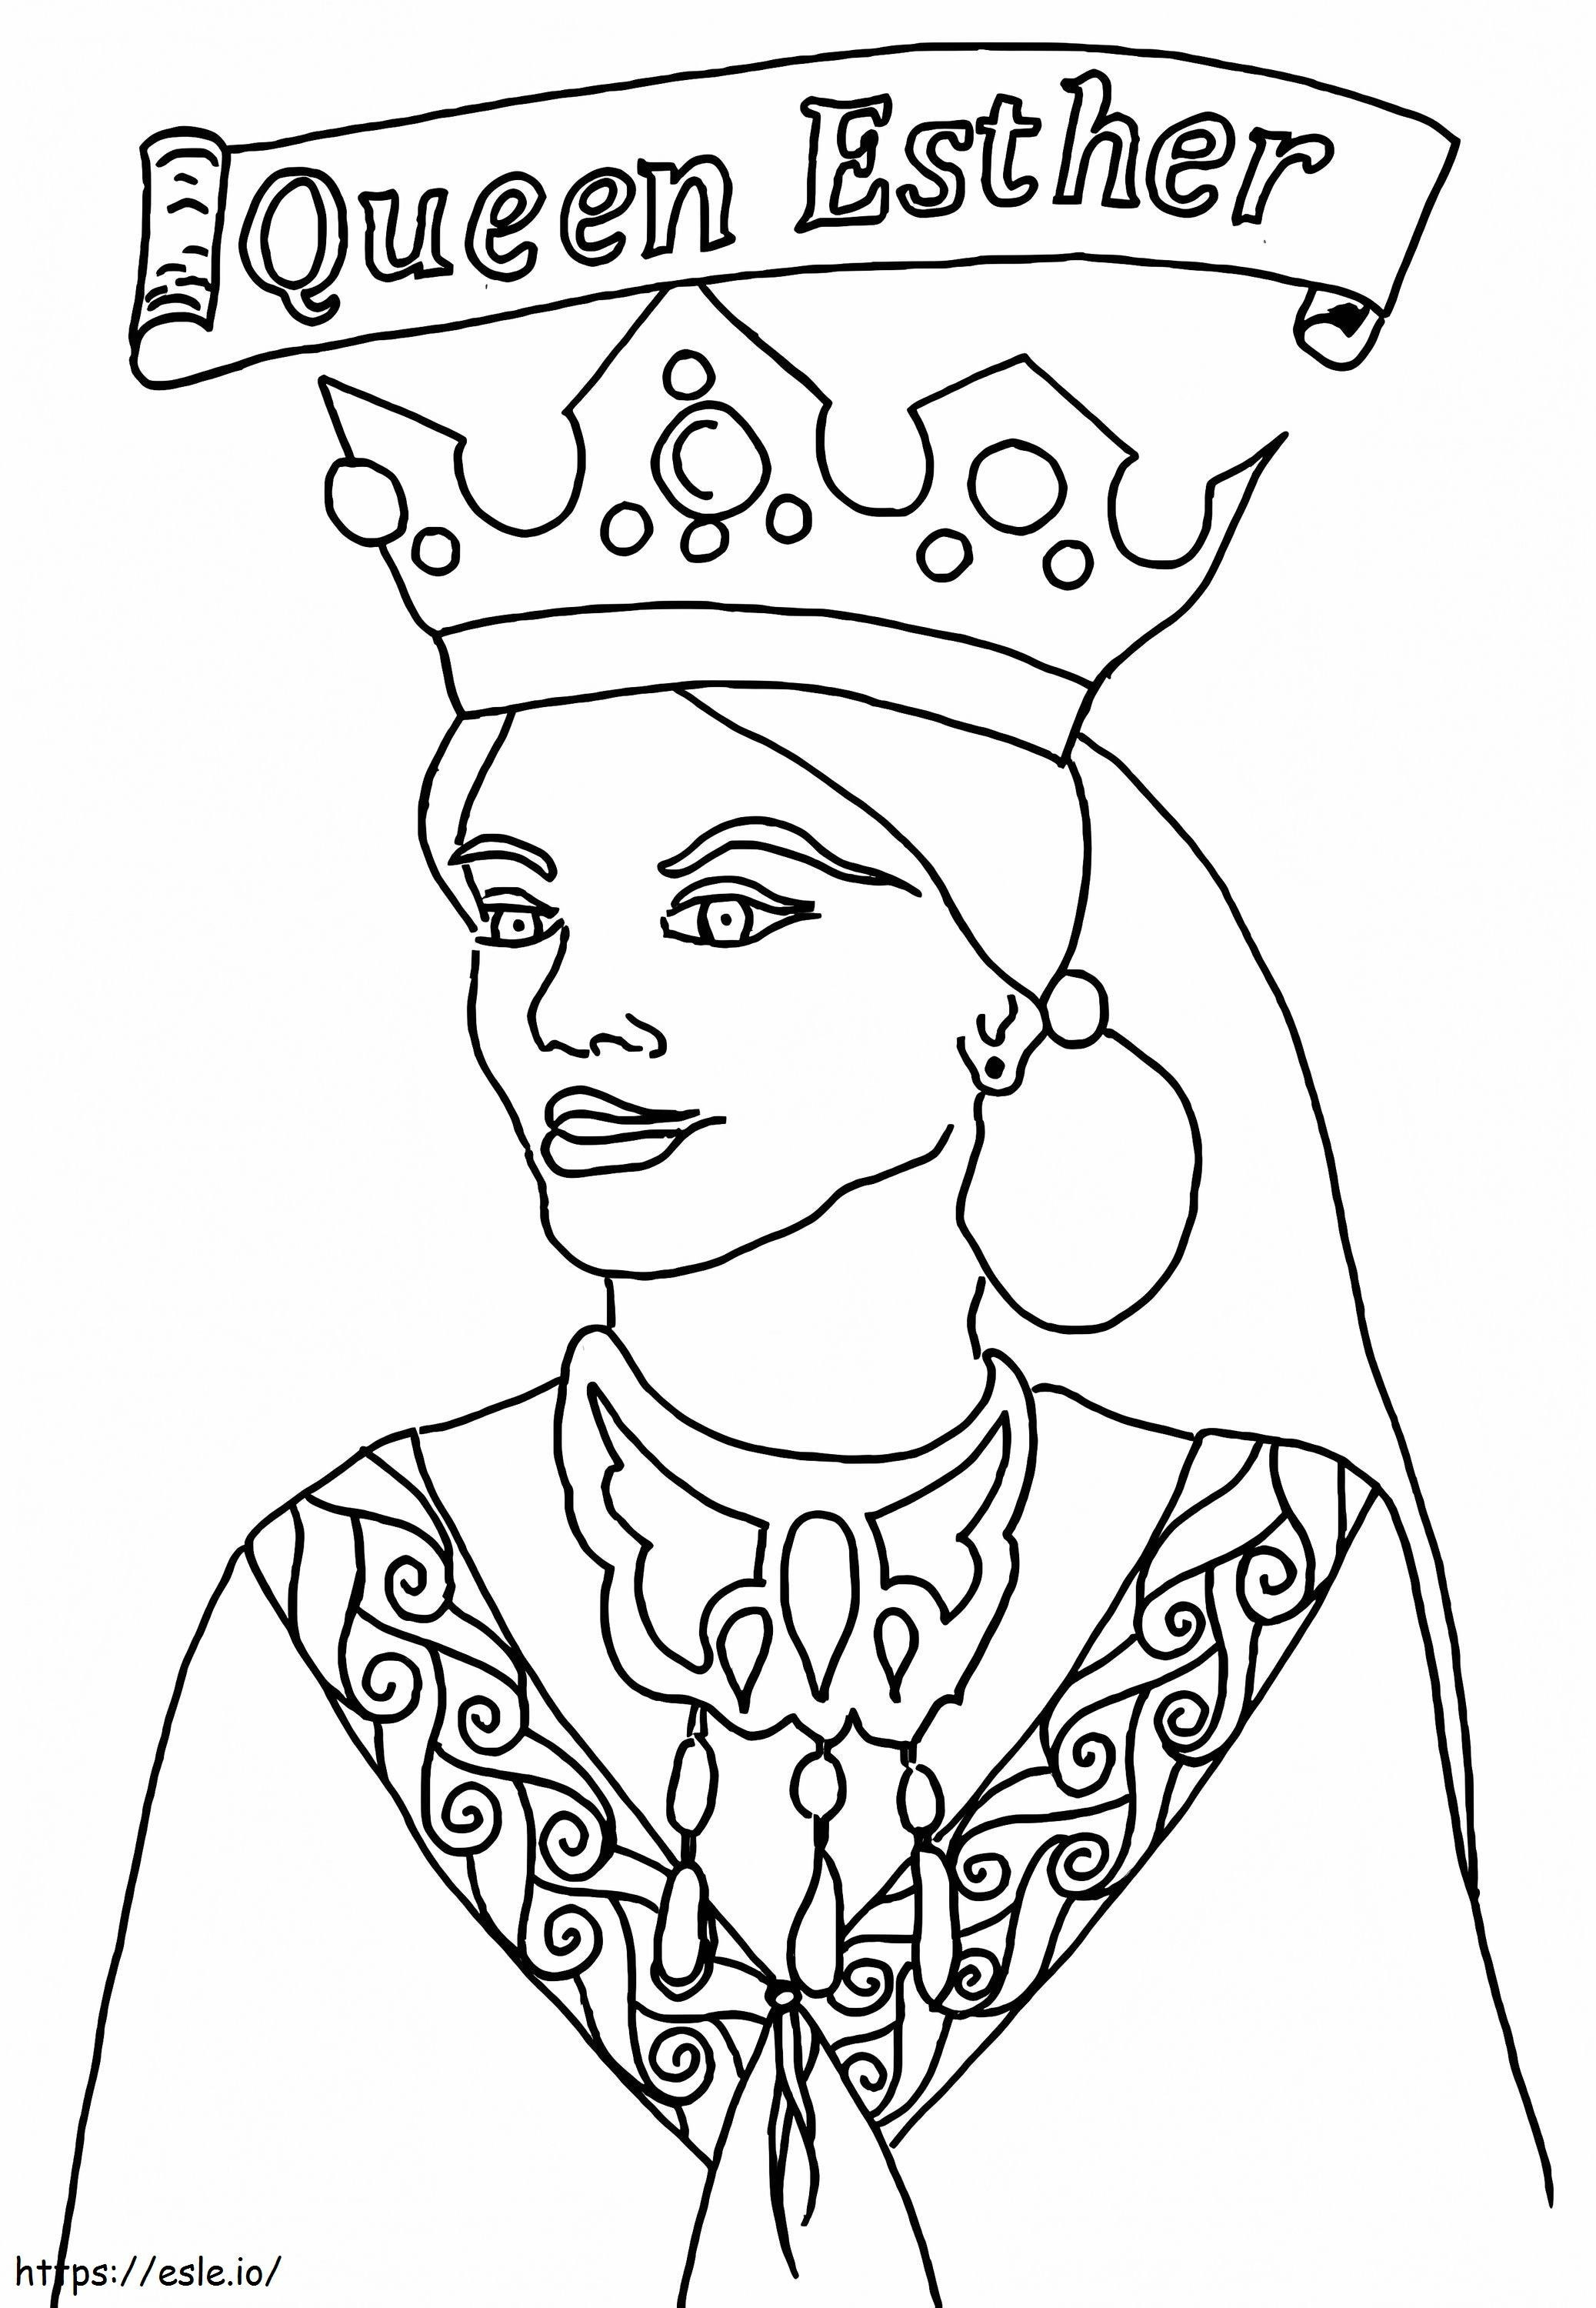 Livre Rainha Ester para colorir